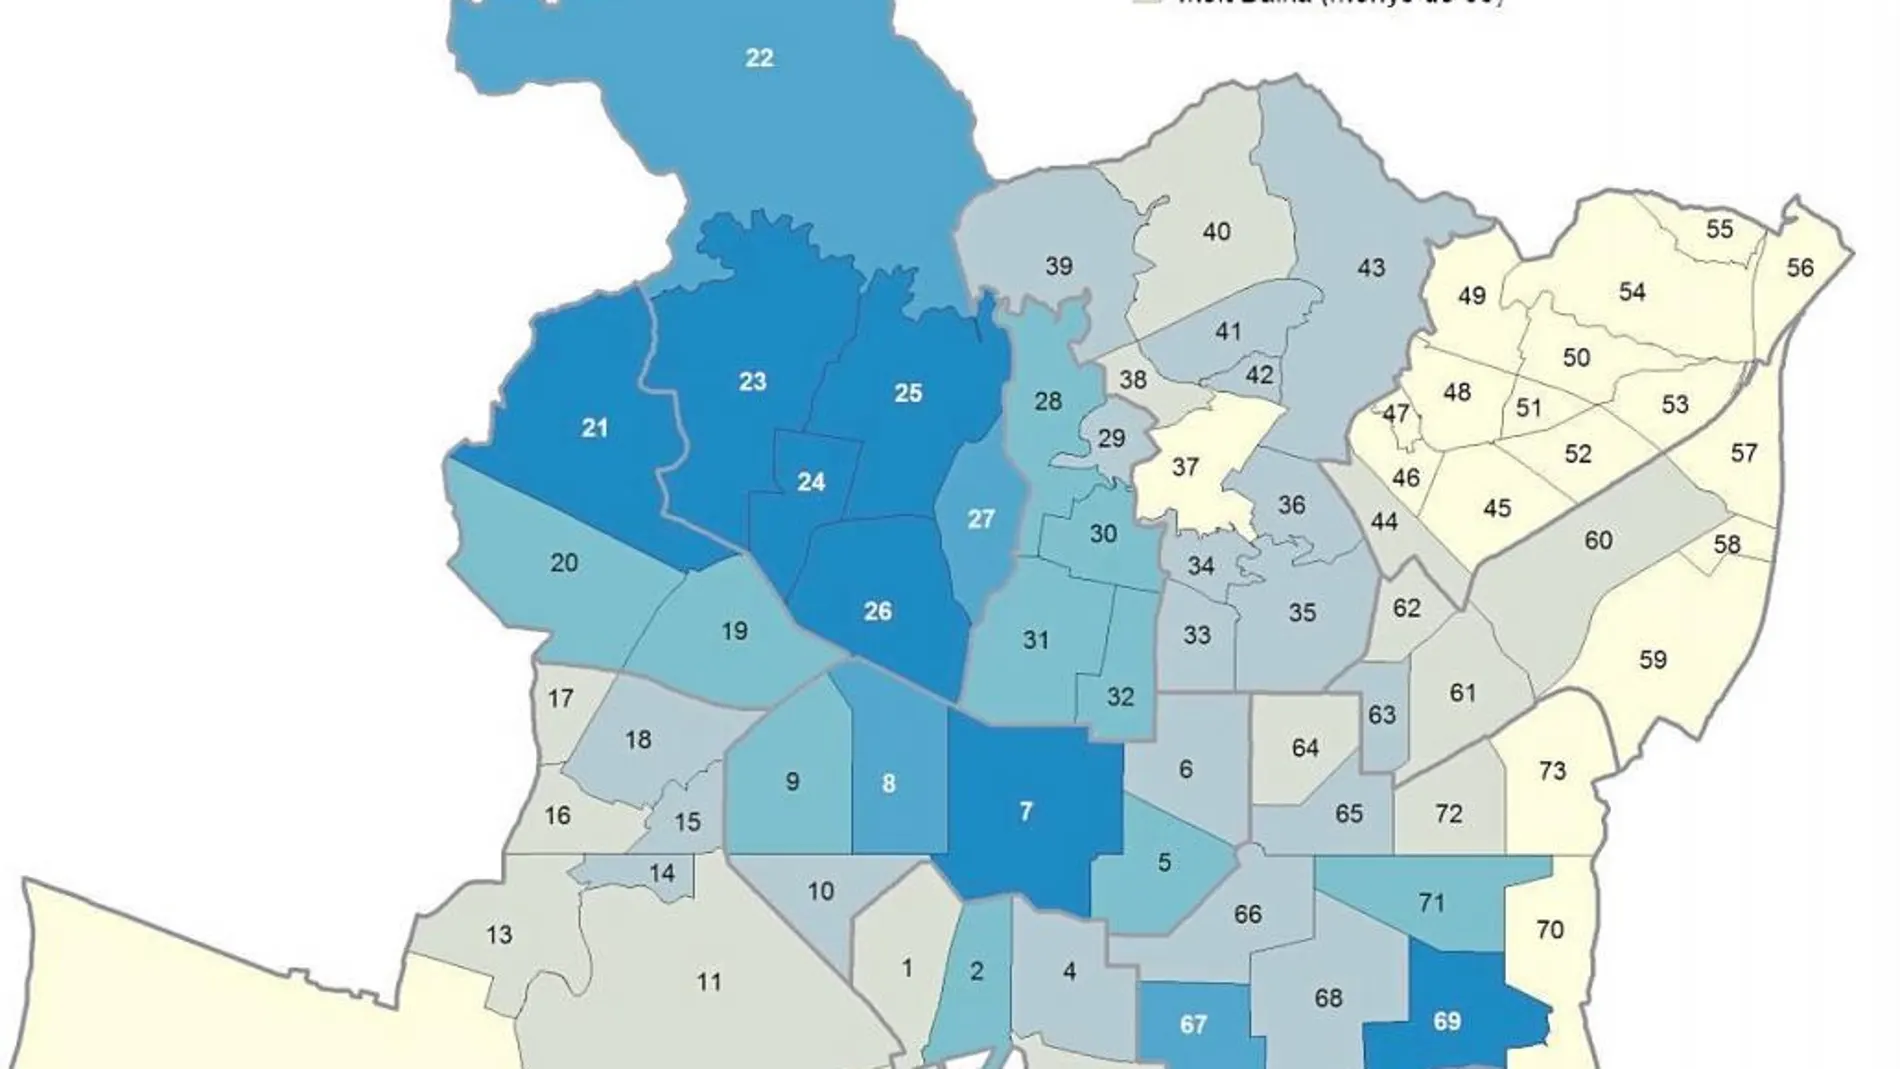 Mapa de la renta familiar disponible en Barcelona por barrios